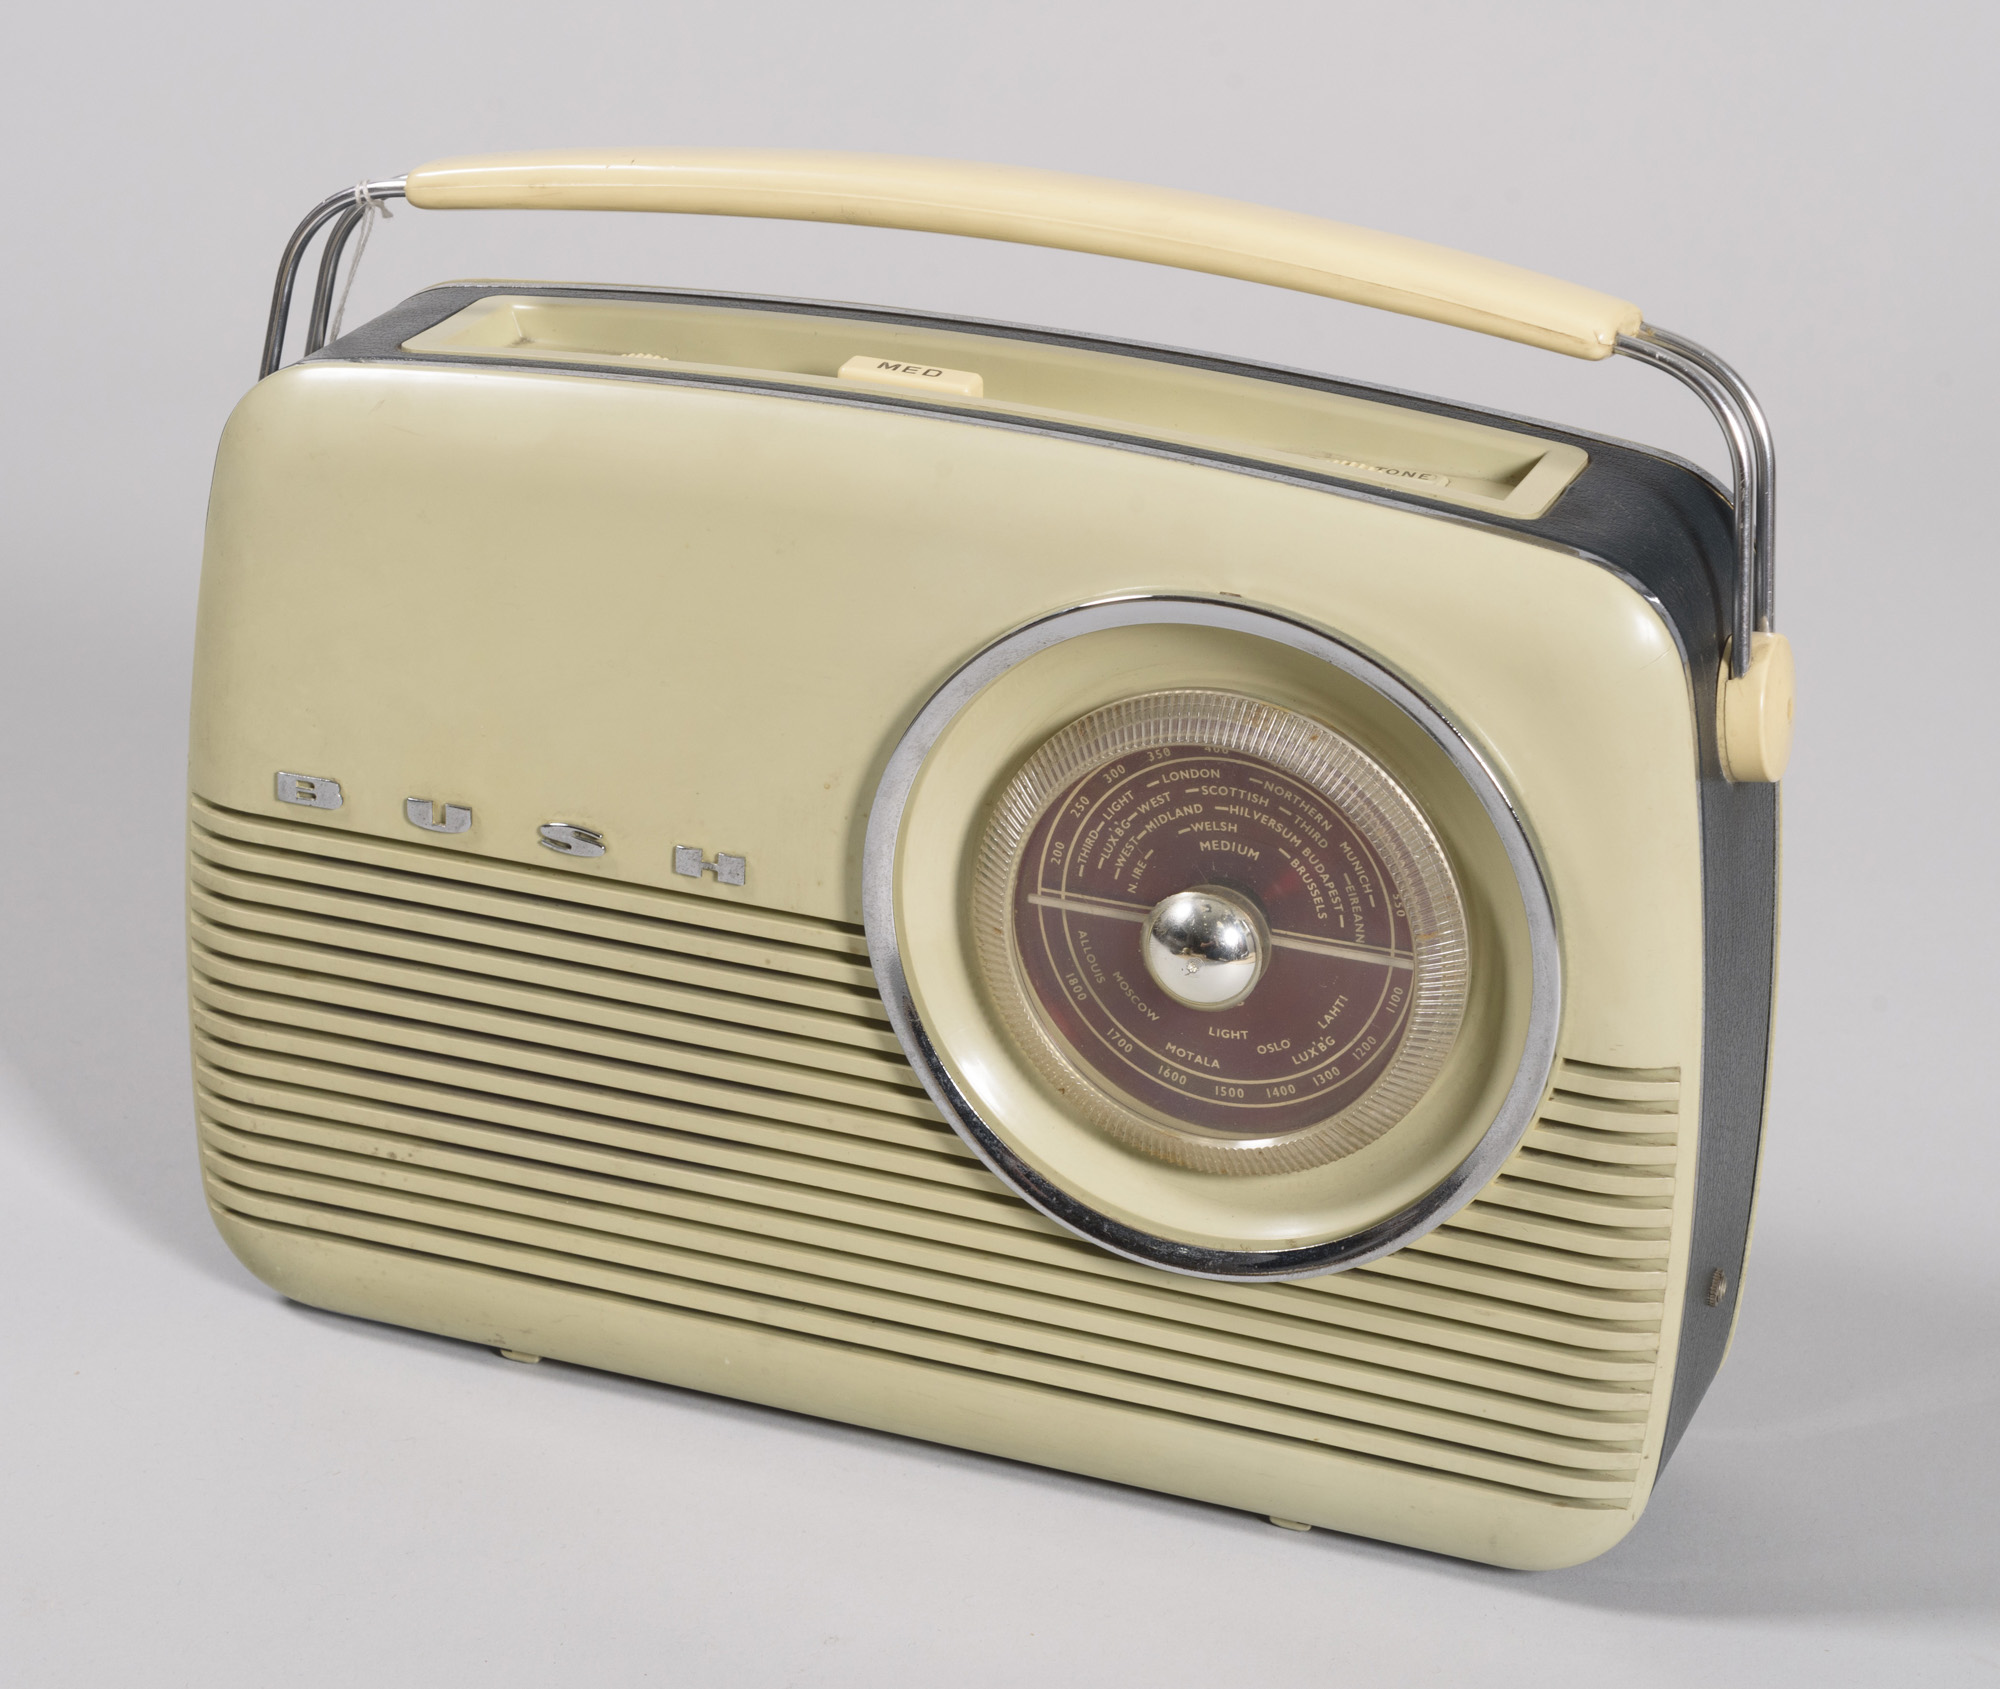 RADIO PORTATIL BUSH. INGLATERRA, AÑOS 50